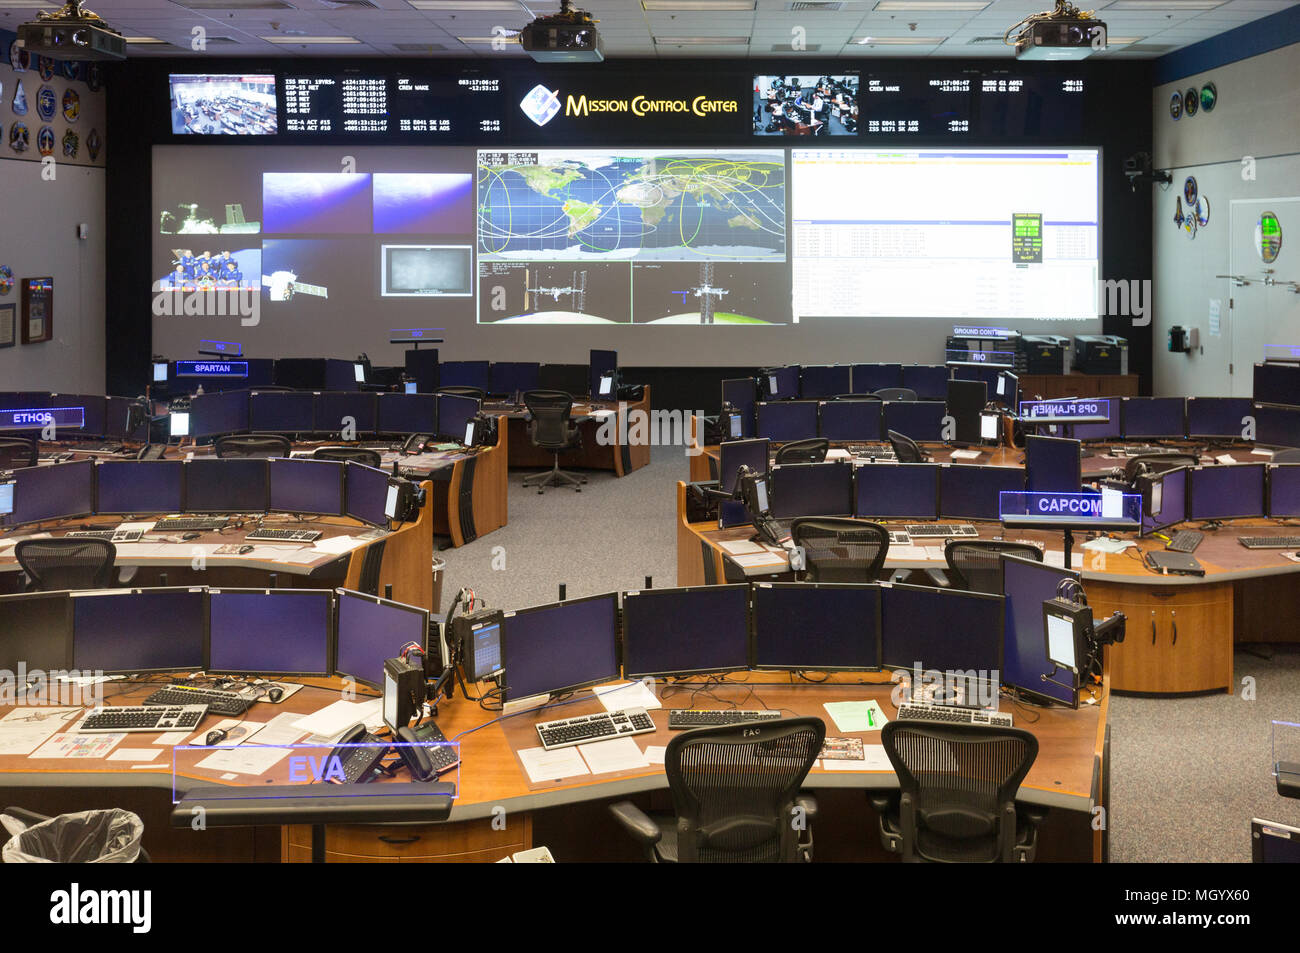 Mission Control Center, NASA Johnson Space Center, Houston, Texas, USA Stockfoto